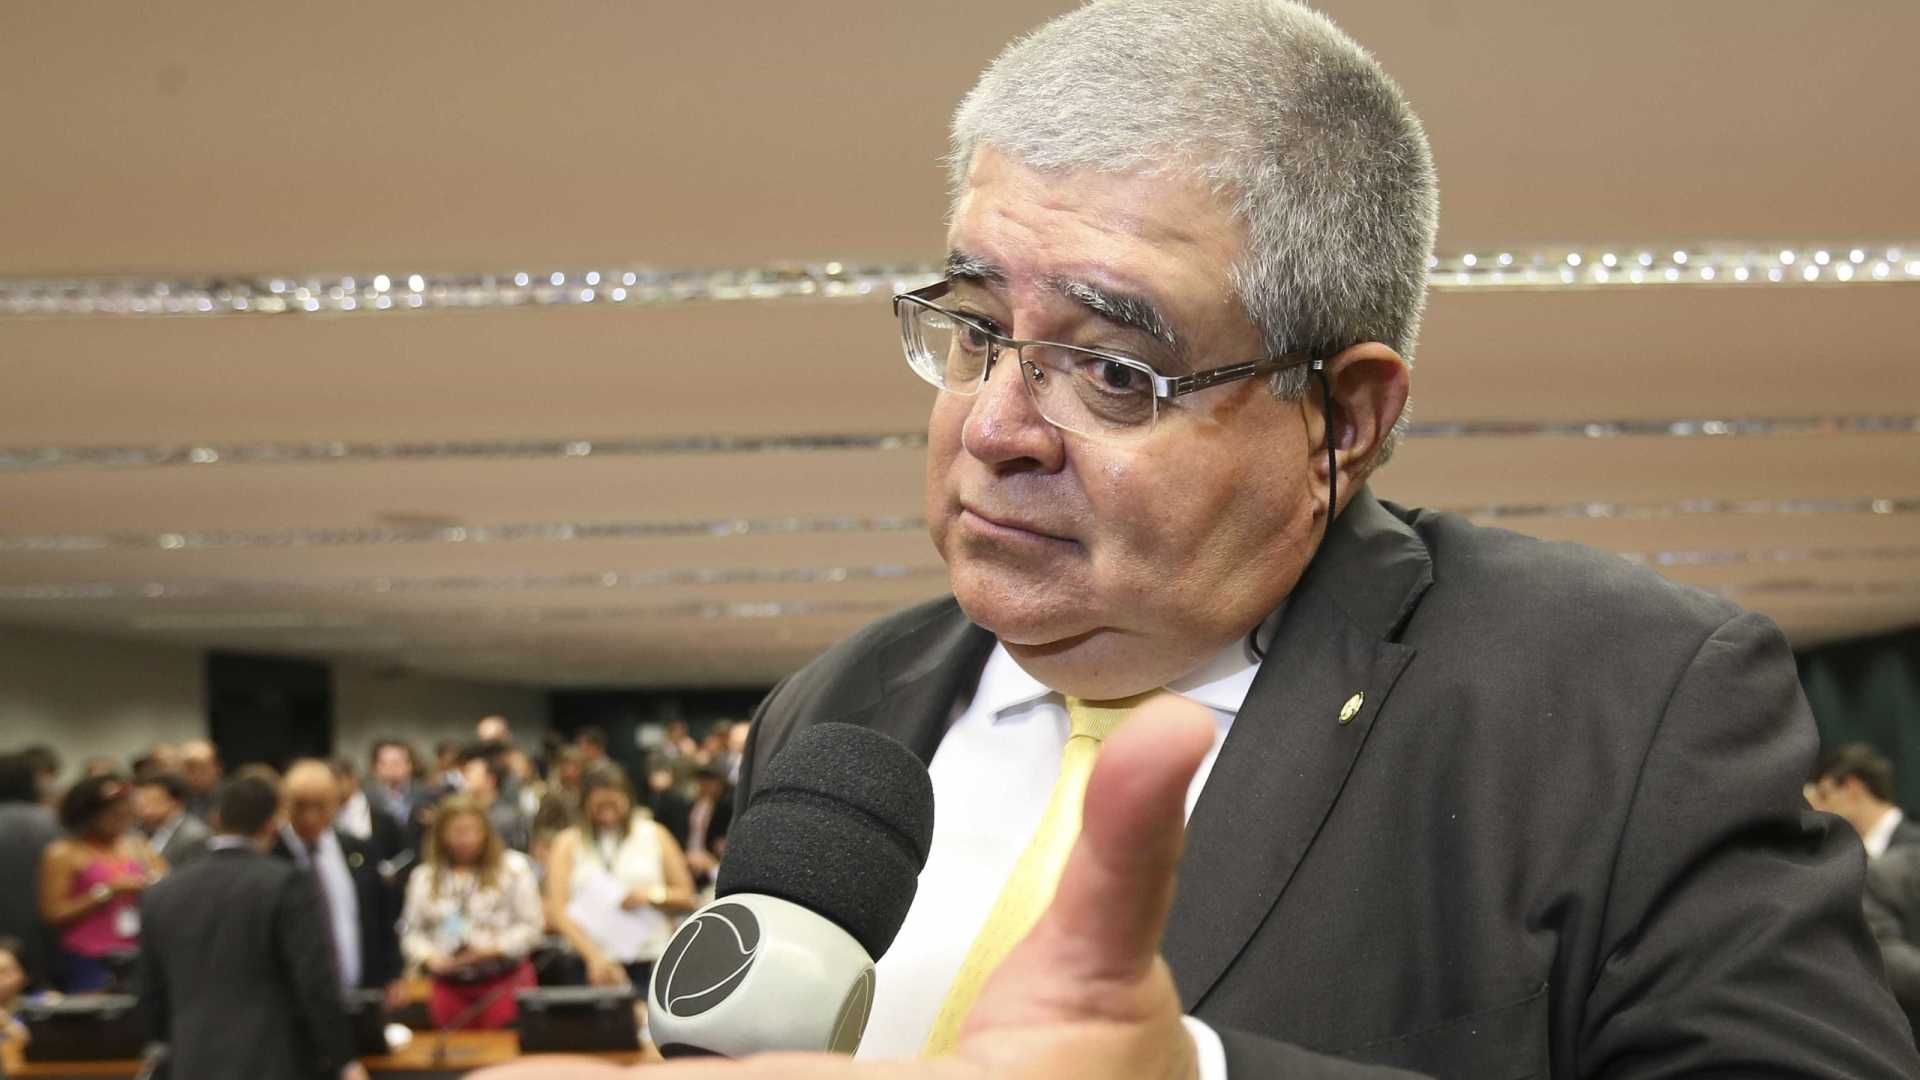 Aliado de Temer, relator de CPI quer indiciamento de ex-cúpula da PGR